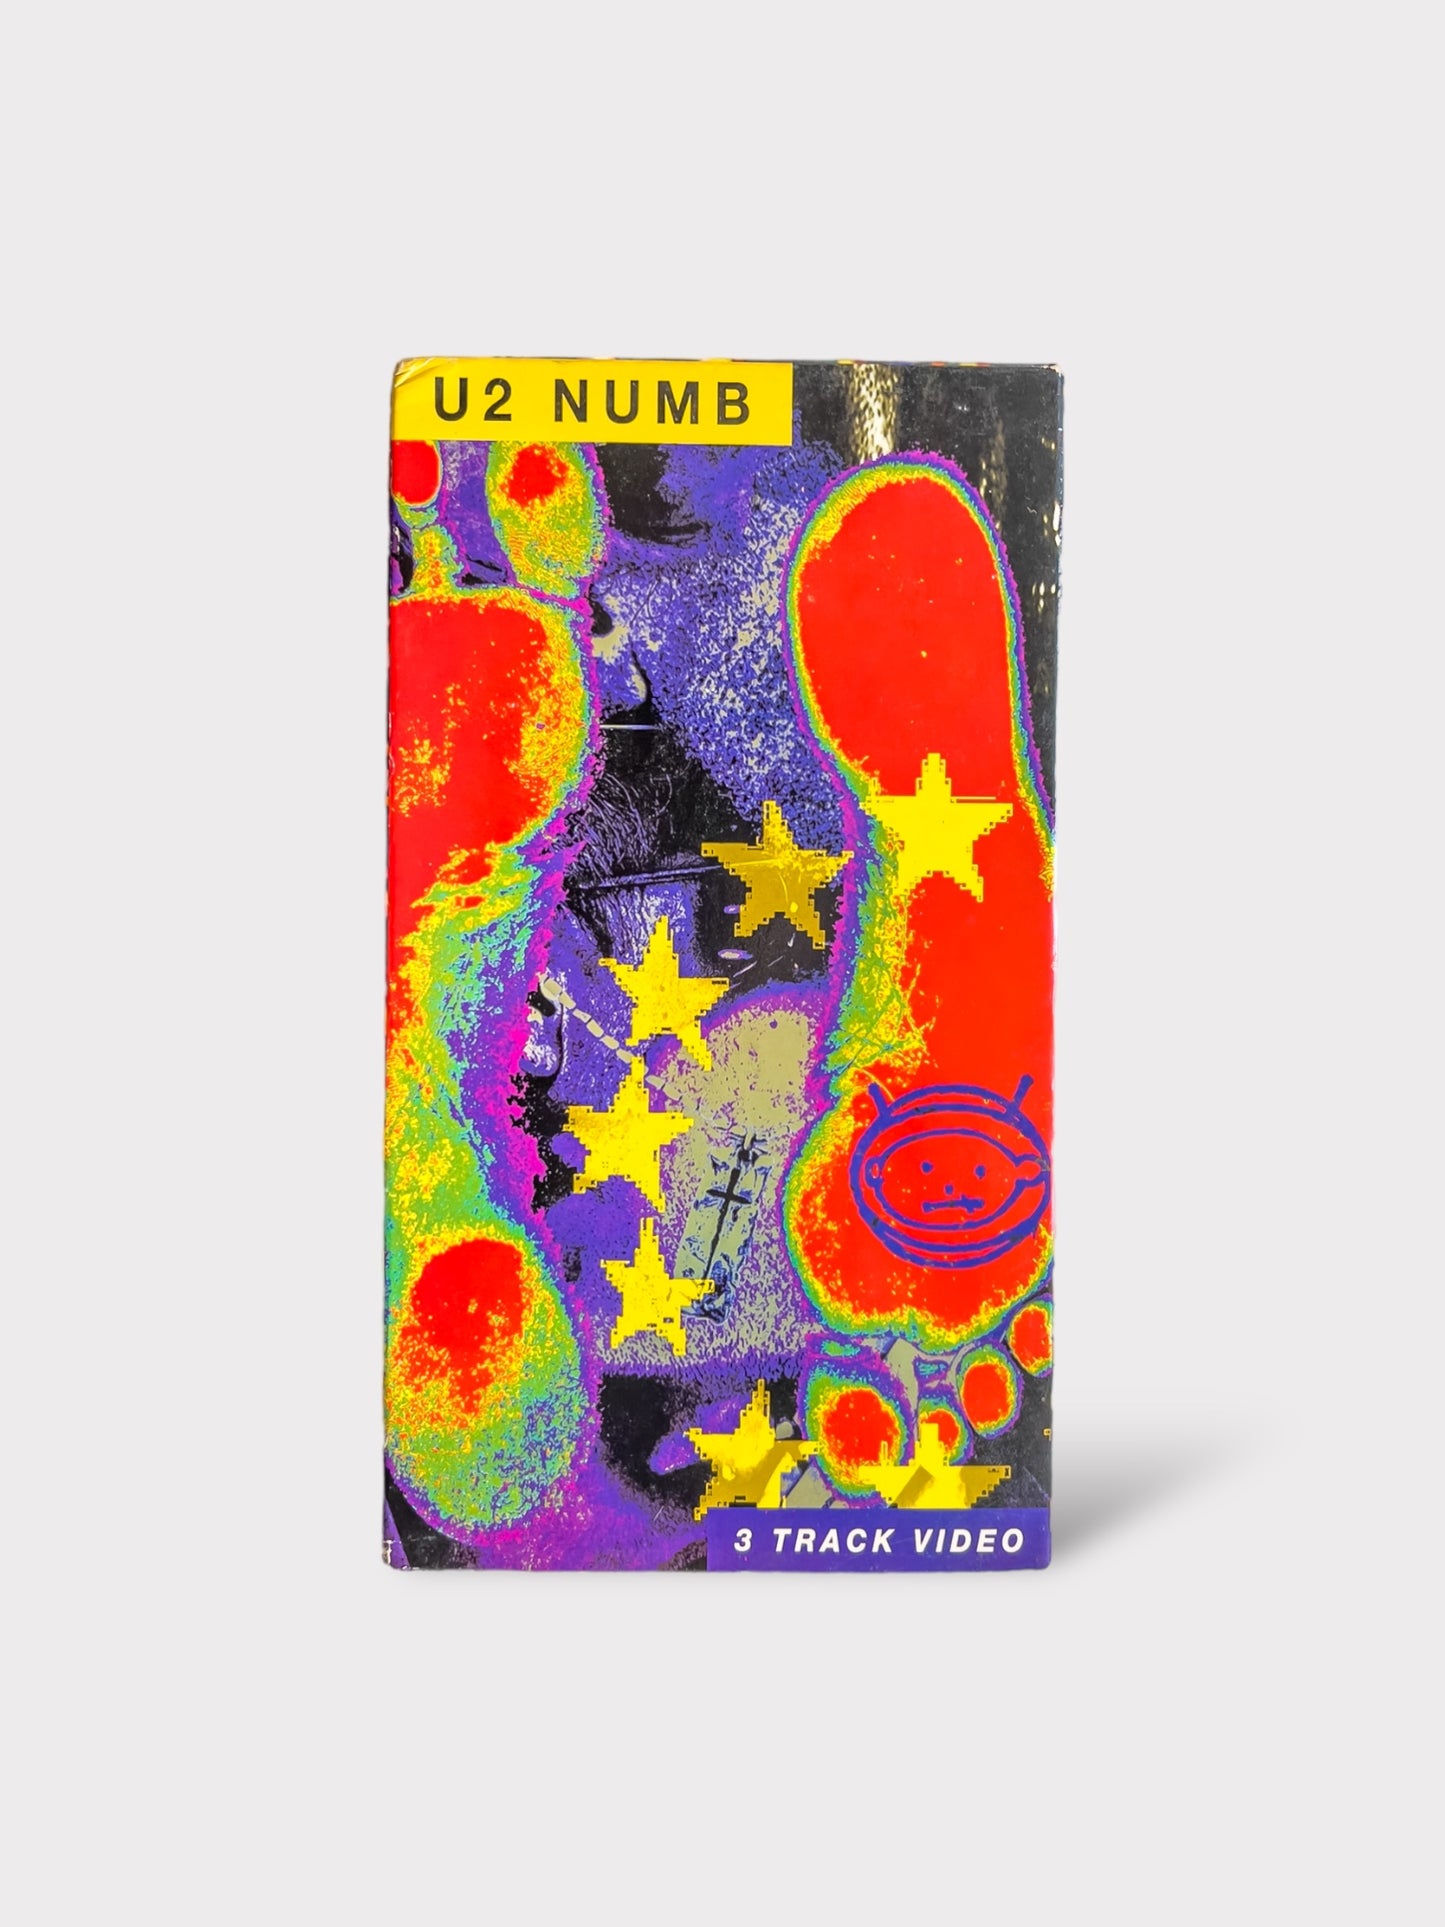 U2 NUMB VHS